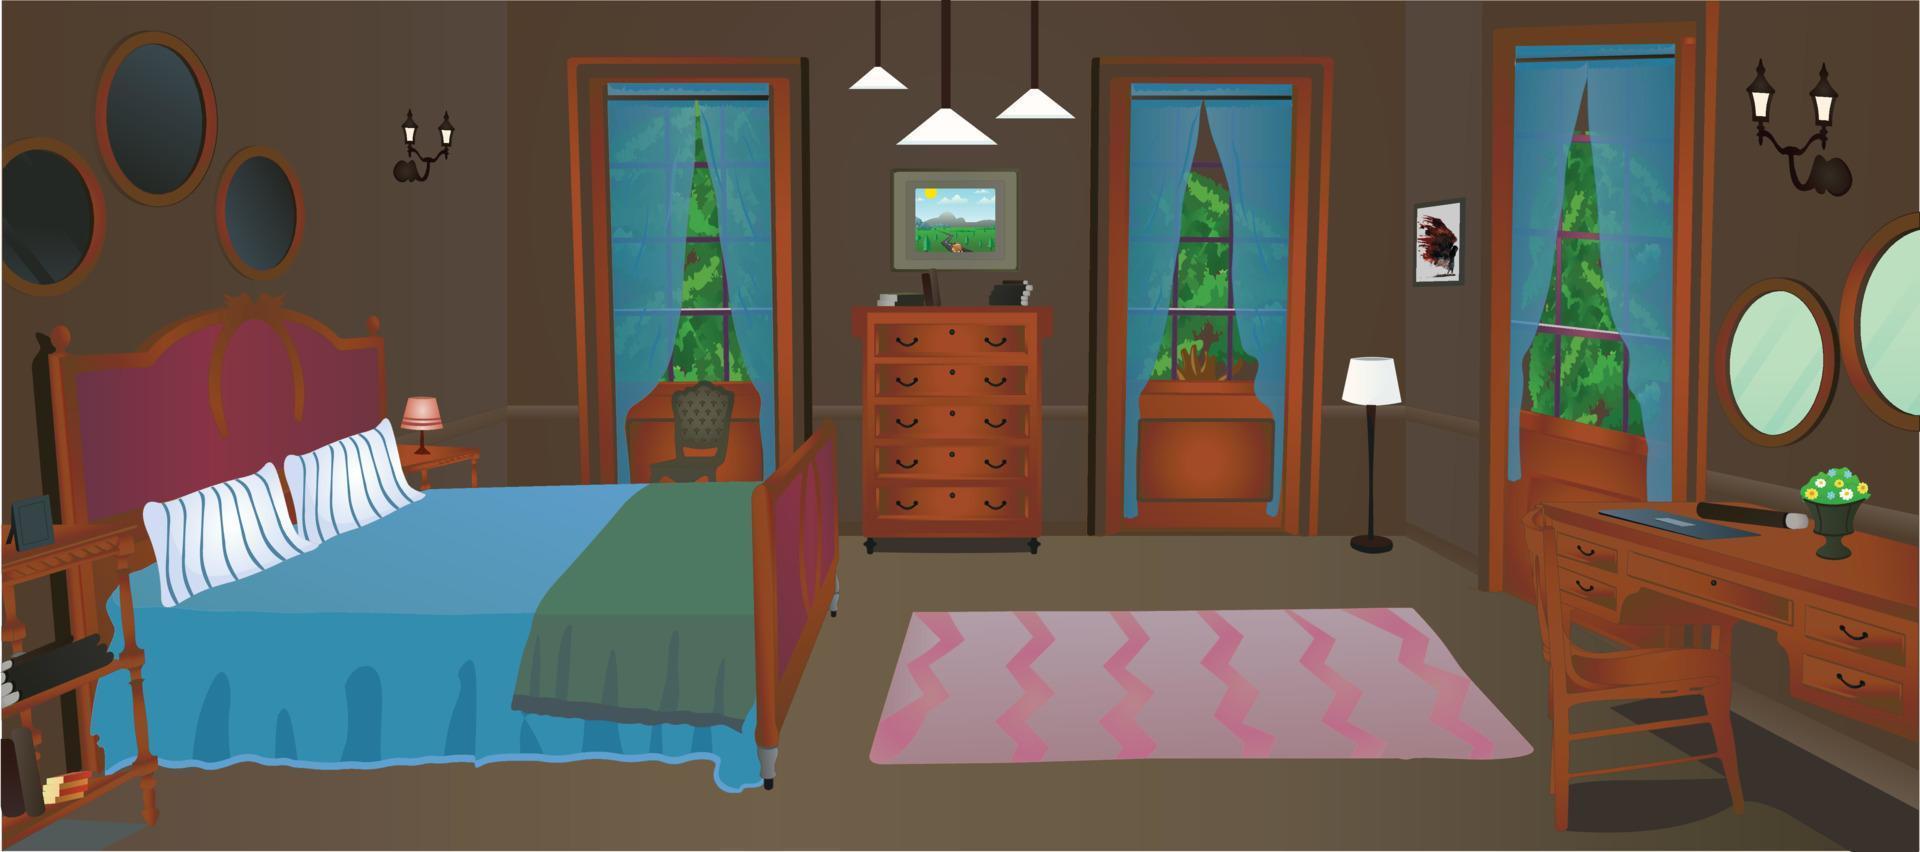 woonkamer binnen interieur met gezellig bed, meubels enz, vector illustratie cartoon achtergrond.